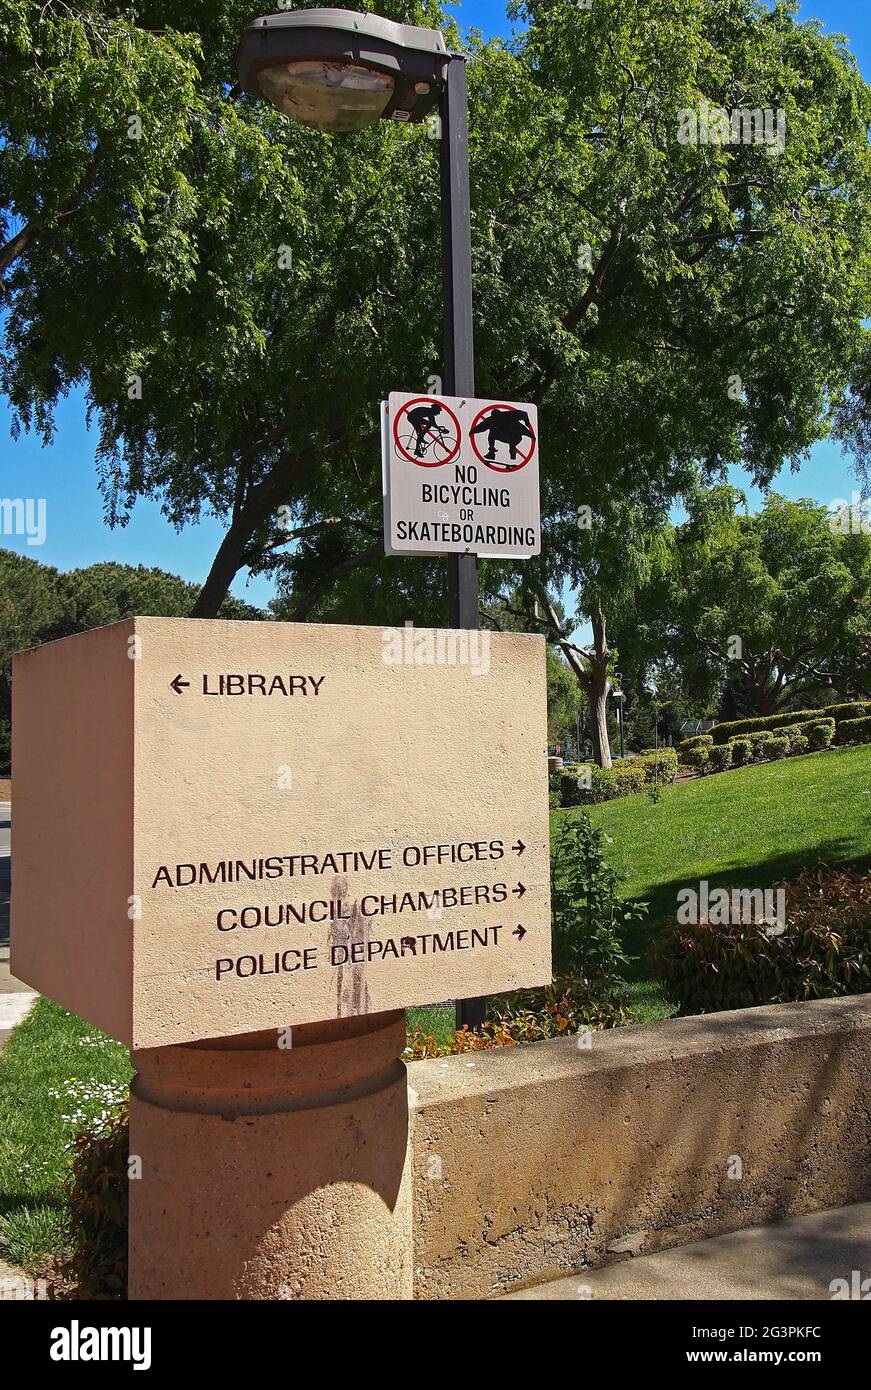 Anfahrtsbeschreibung der Union City für Bibliothek, Verwaltungsbüros, Ratskammern, Polizeibehörde und keine Skateboarding- oder Fahrradschilder, Kalifornien Stockfoto